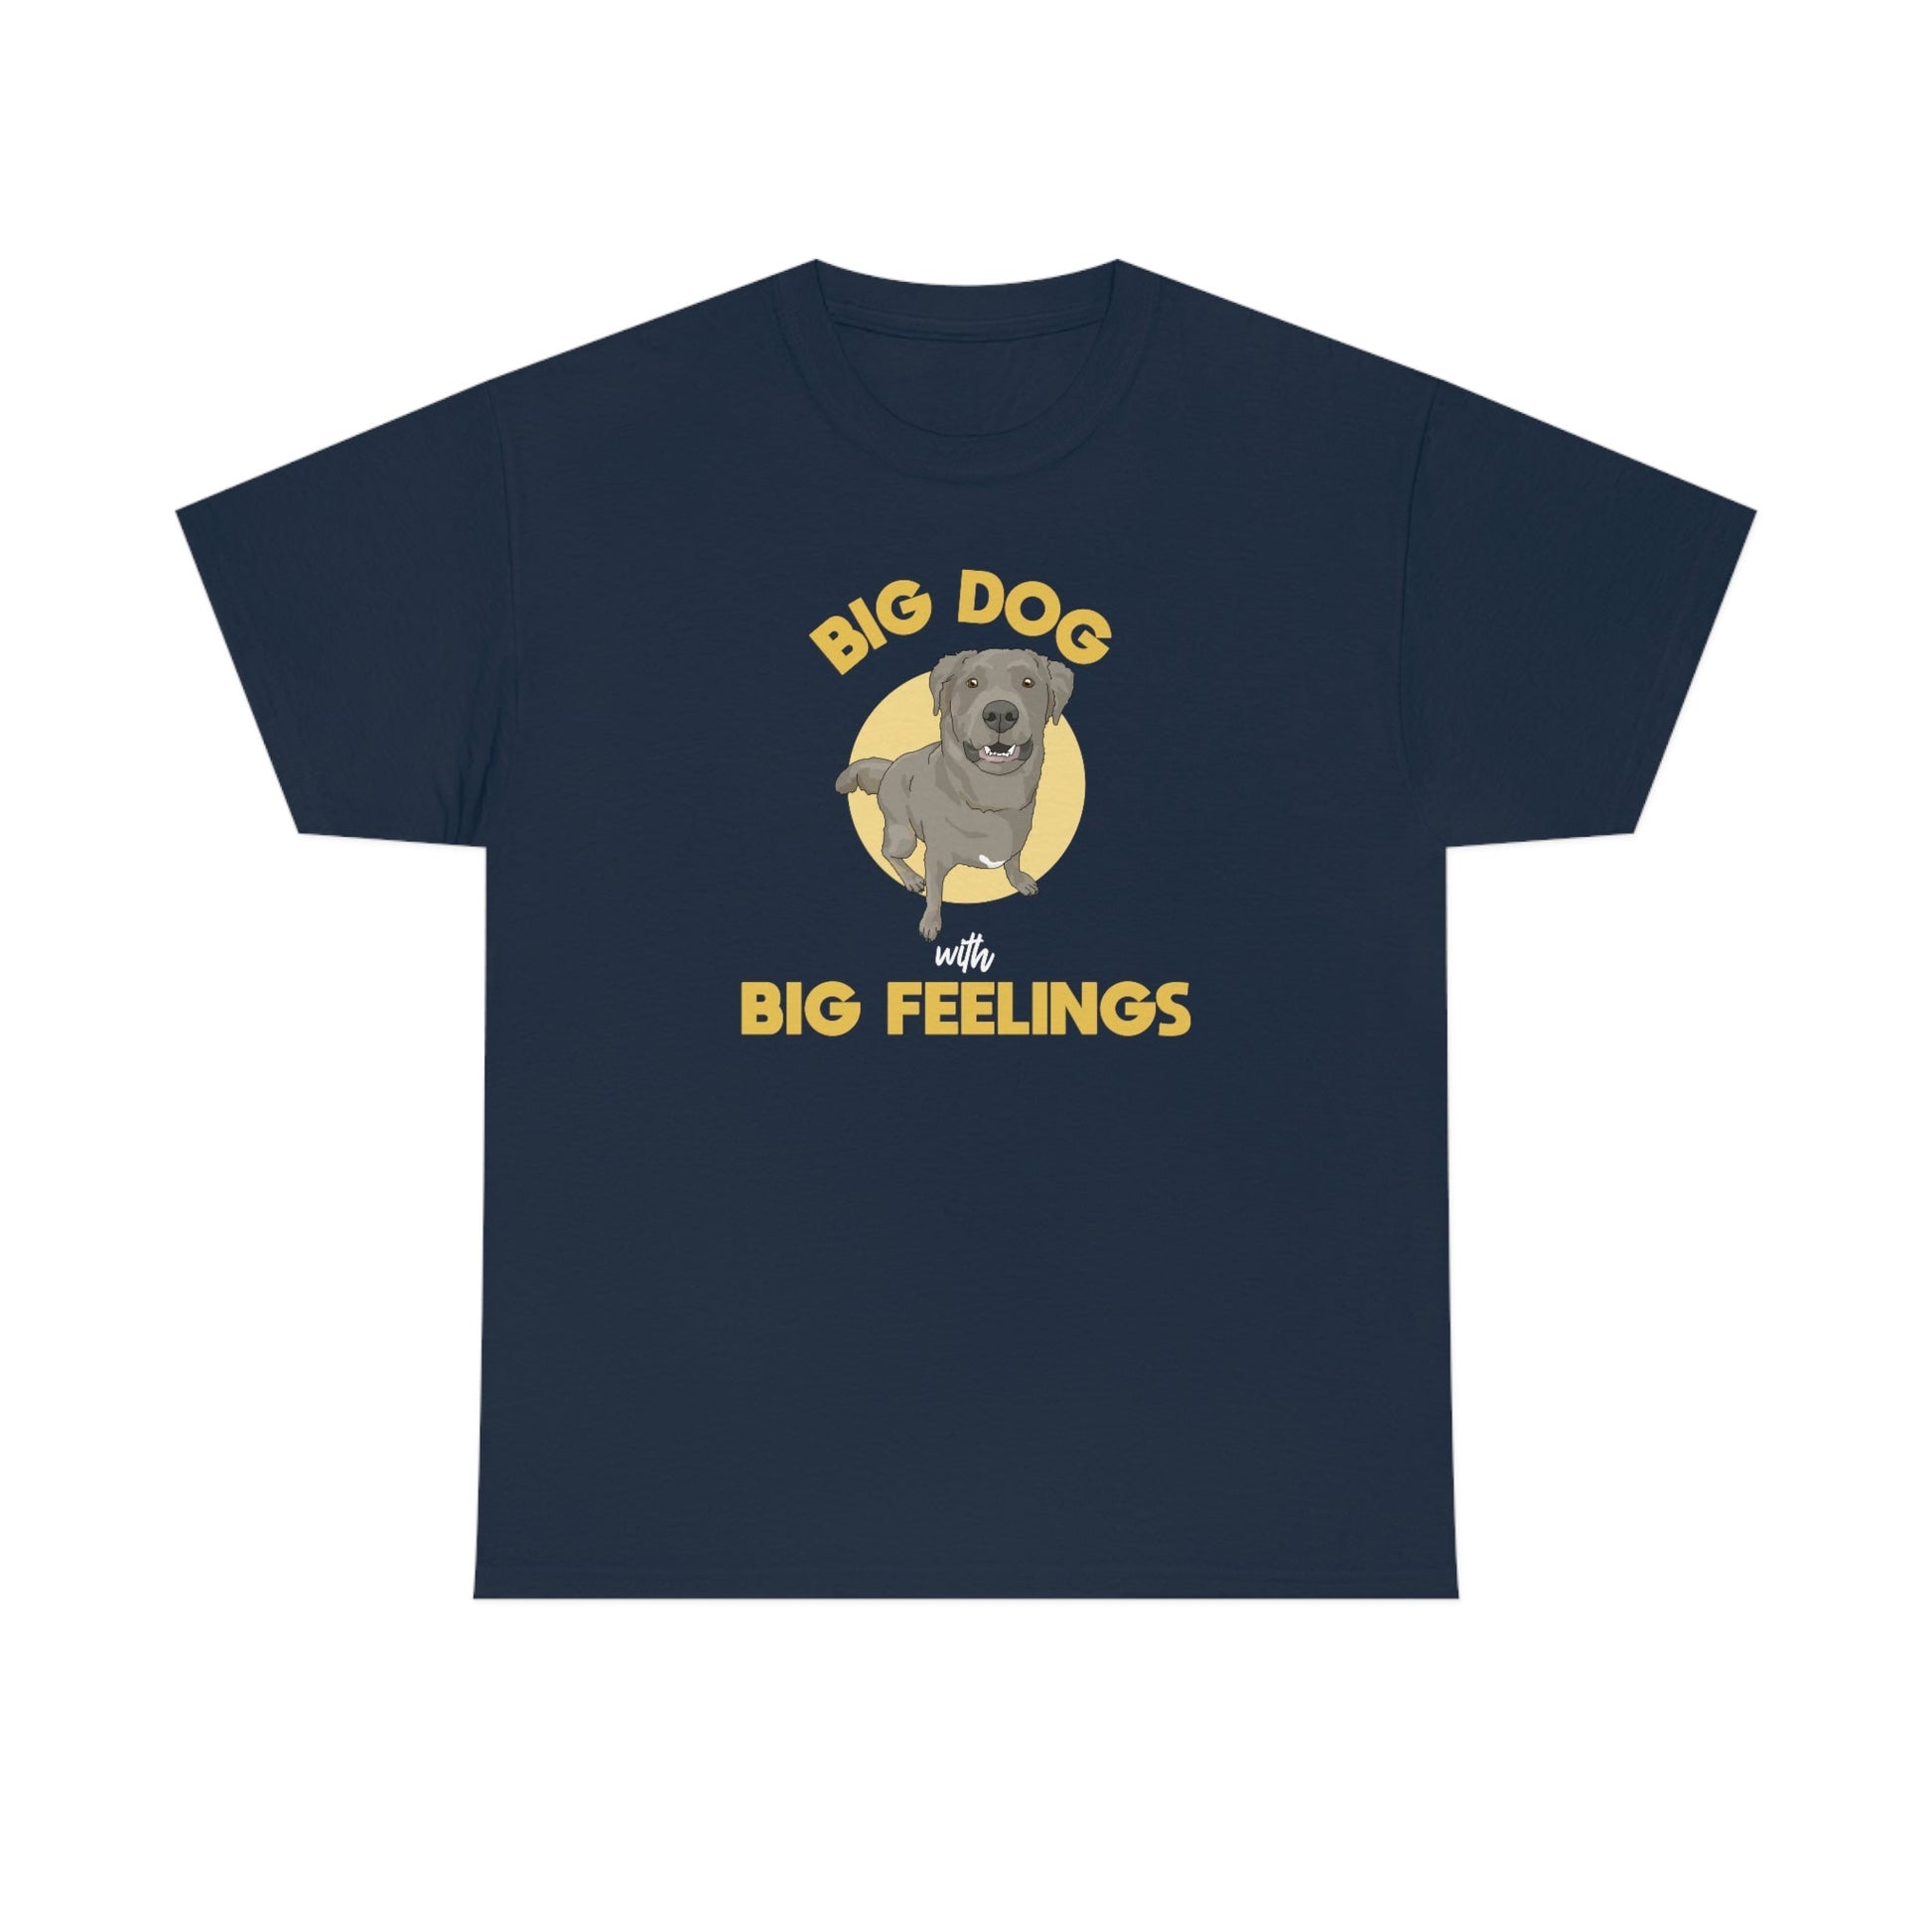 Big Dog With Big Feelings | T-shirt - Detezi Designs-33608320018212587648